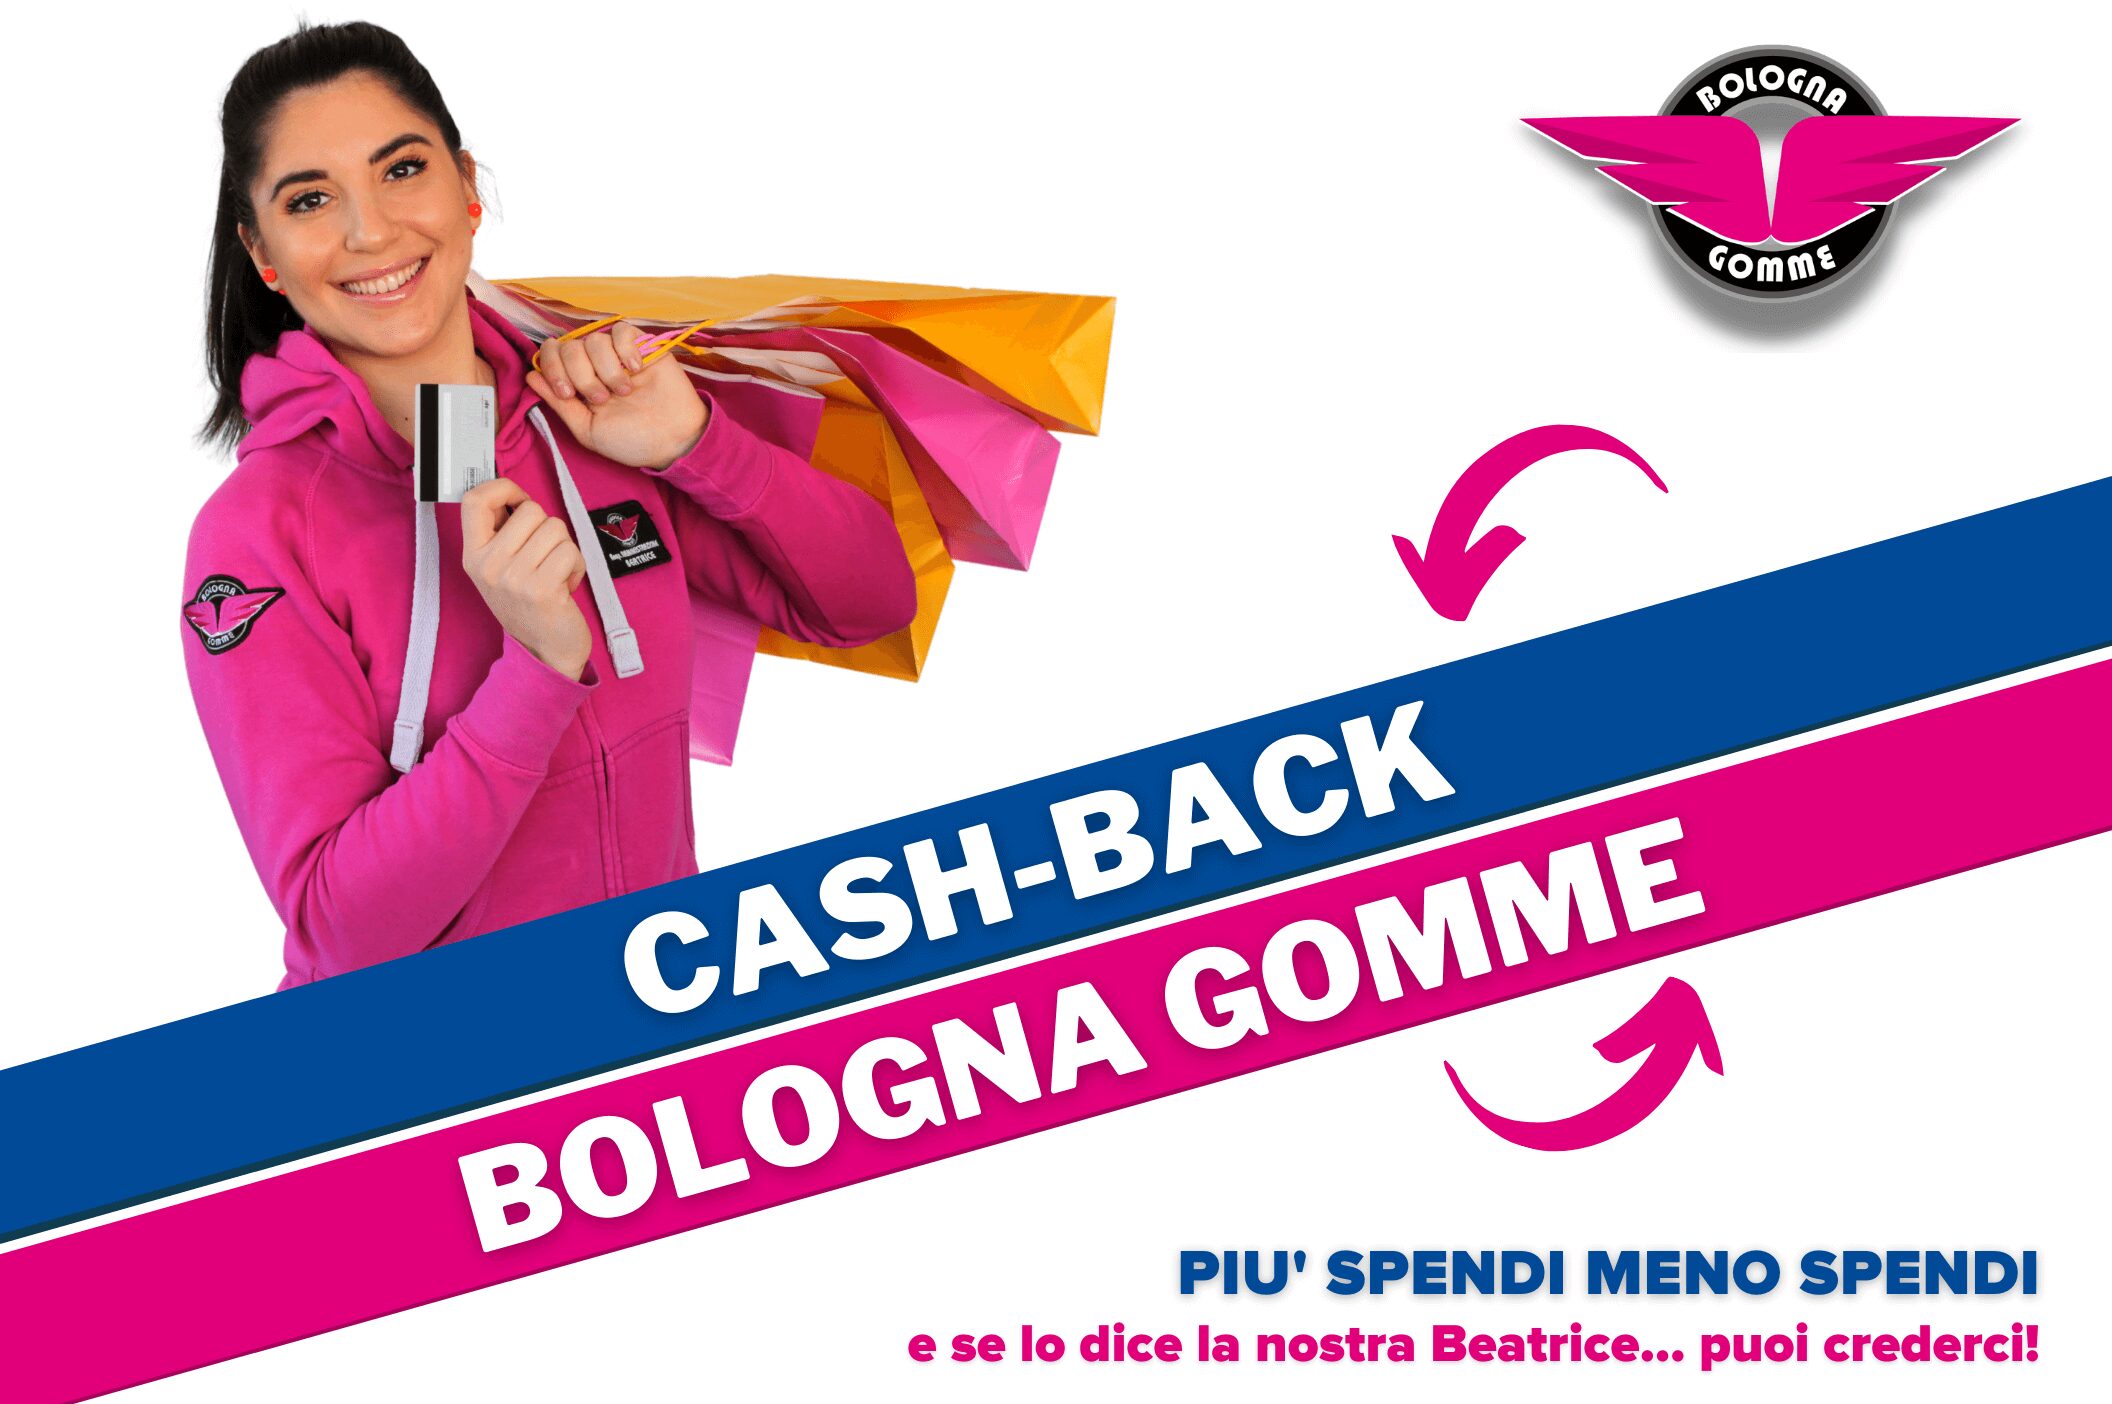 Bologna Gomme cash back promozione